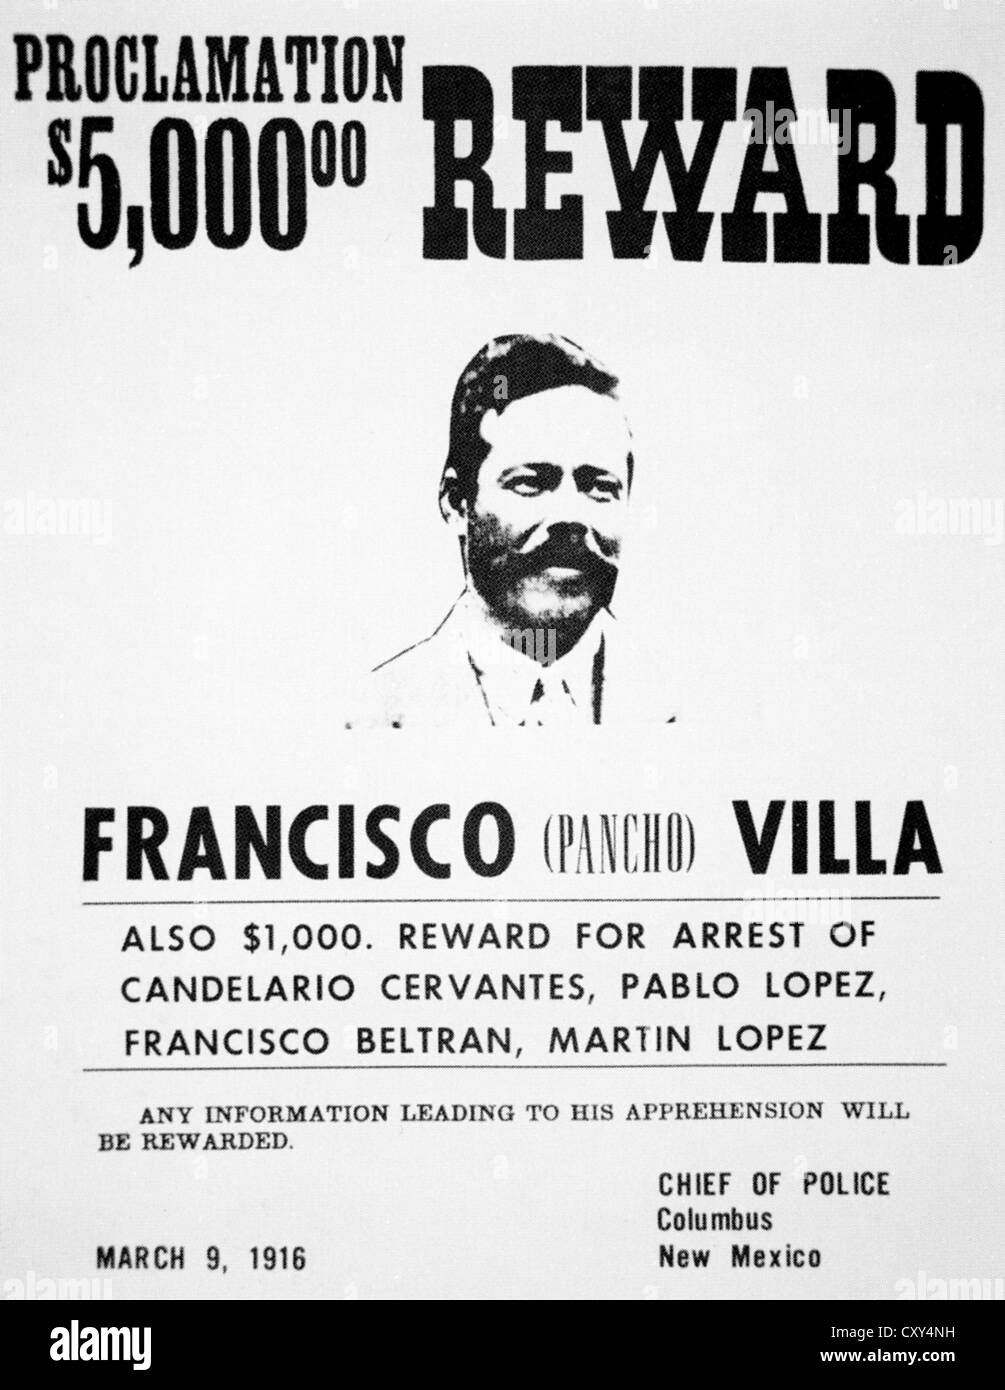 PANCHO VILLA (1878-1923) général de la révolution mexicaine. L'affiche américaine offrant une récompense après son attaque sur Columbus en 1916 Banque D'Images